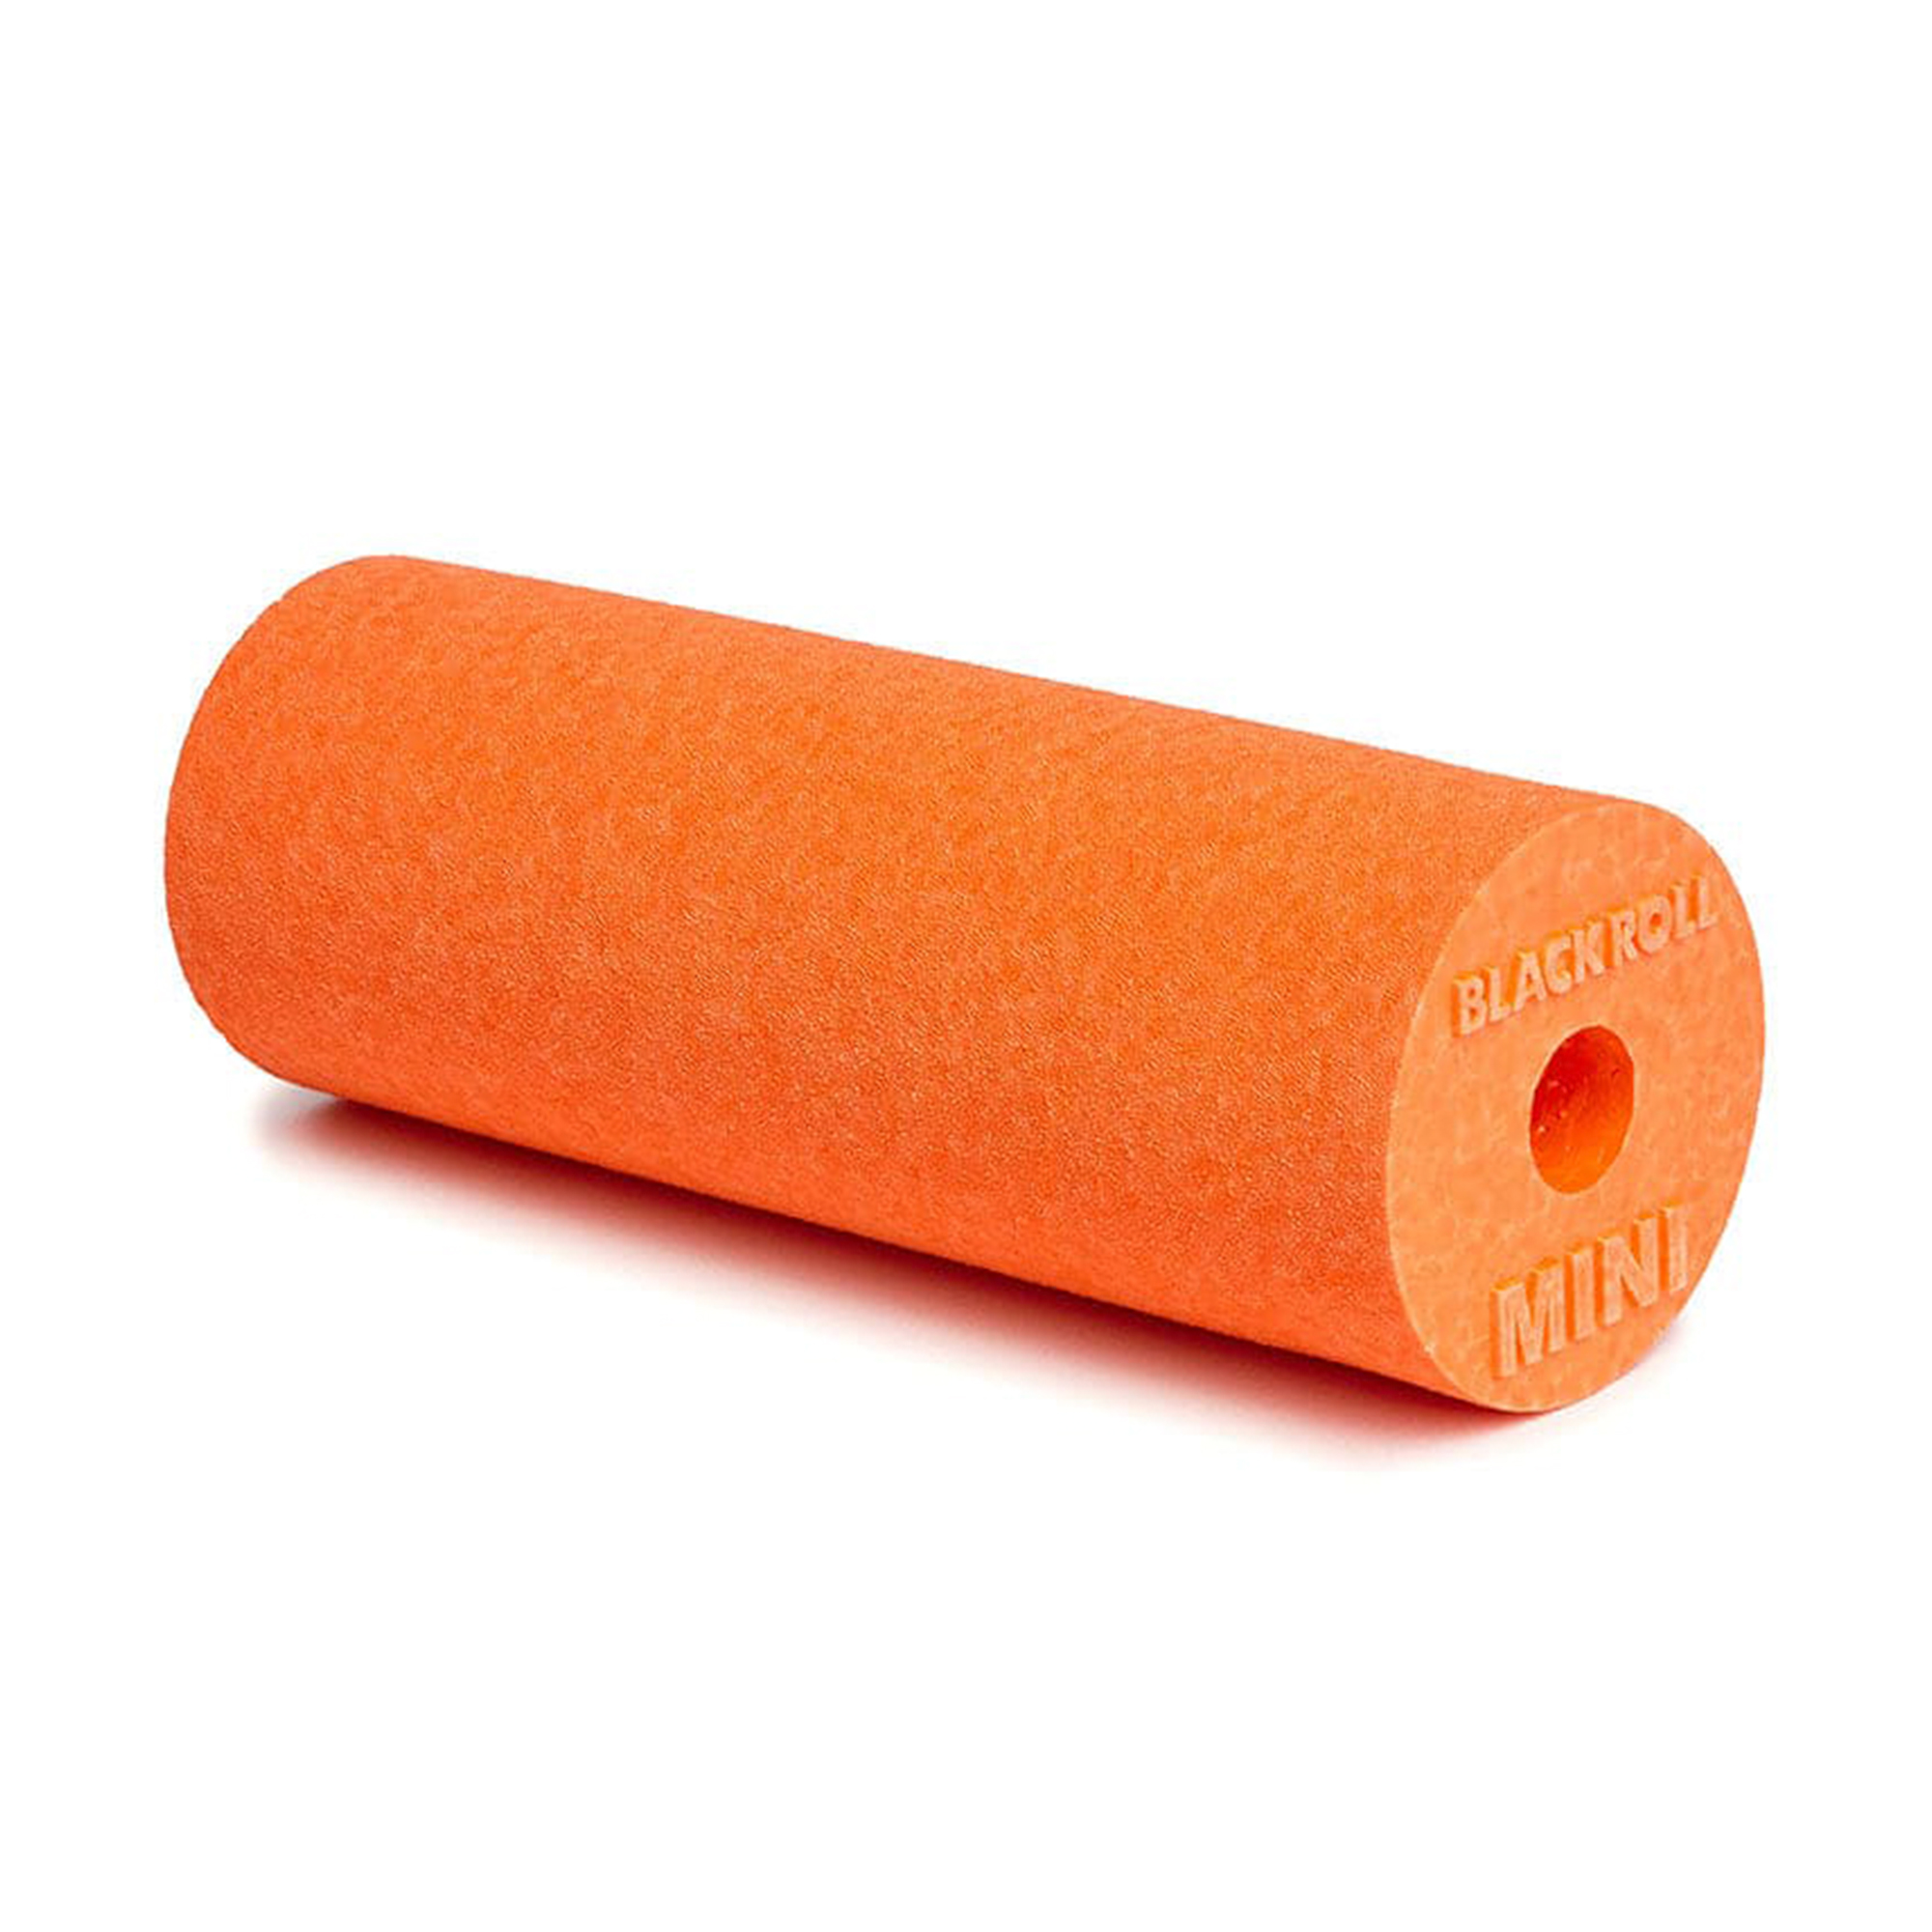 Brug Blackroll Mini Flow Foam Roller - Orange (15 x 6 cm) til en forbedret oplevelse